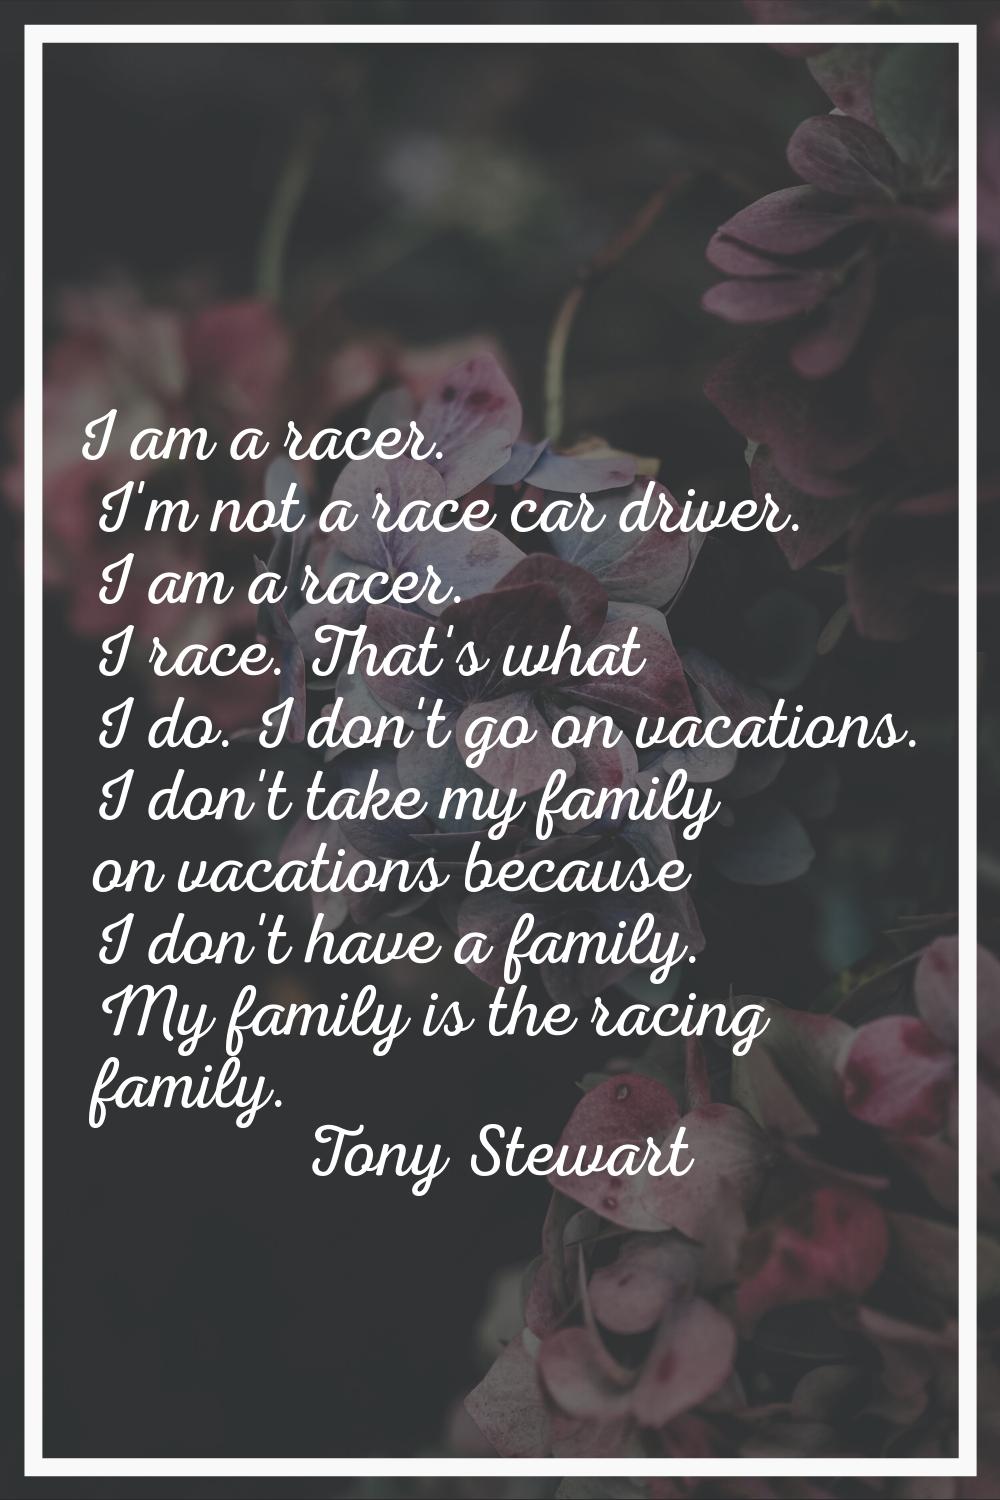 I am a racer. I'm not a race car driver. I am a racer. I race. That's what I do. I don't go on vaca